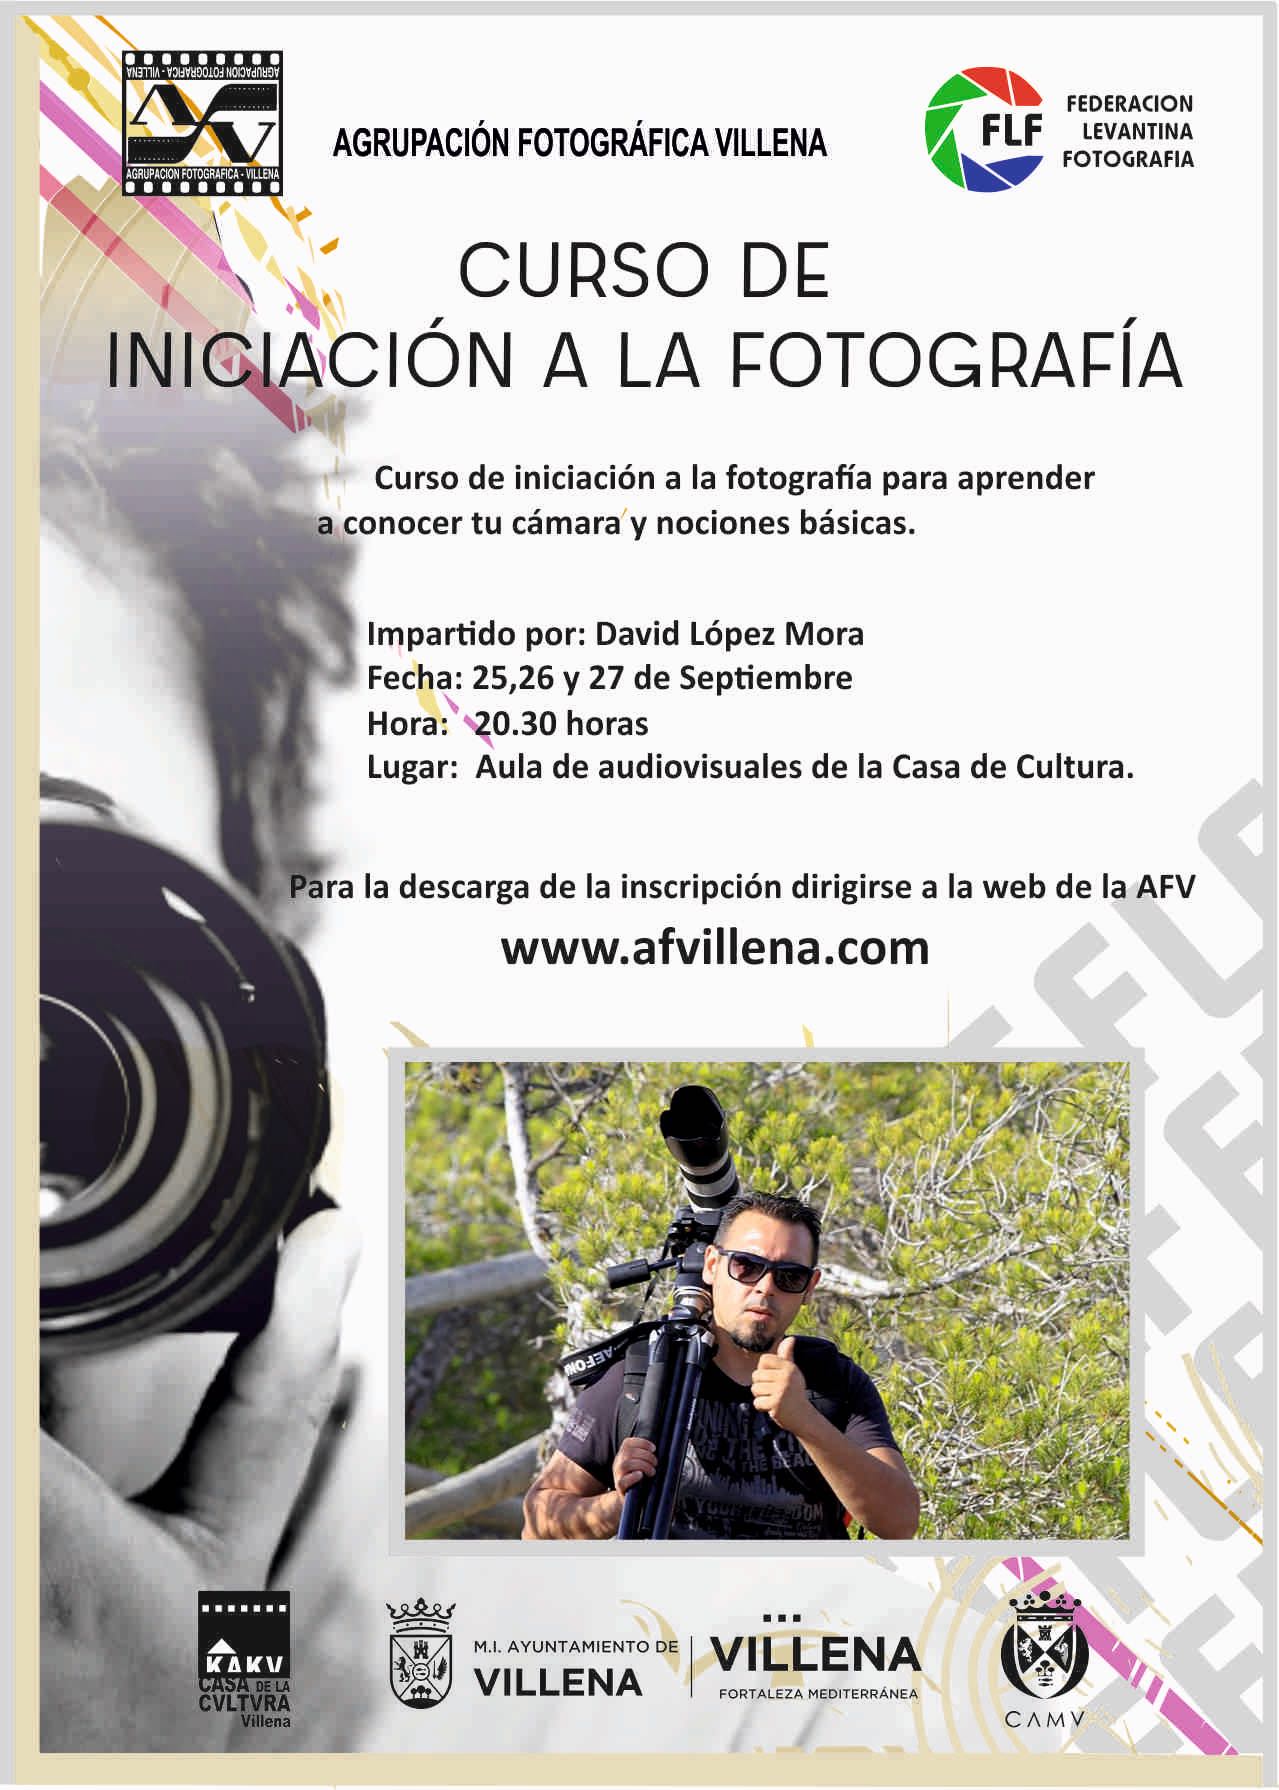 La Agrupación Fotográfica organiza un curso de iniciación a la fotografía